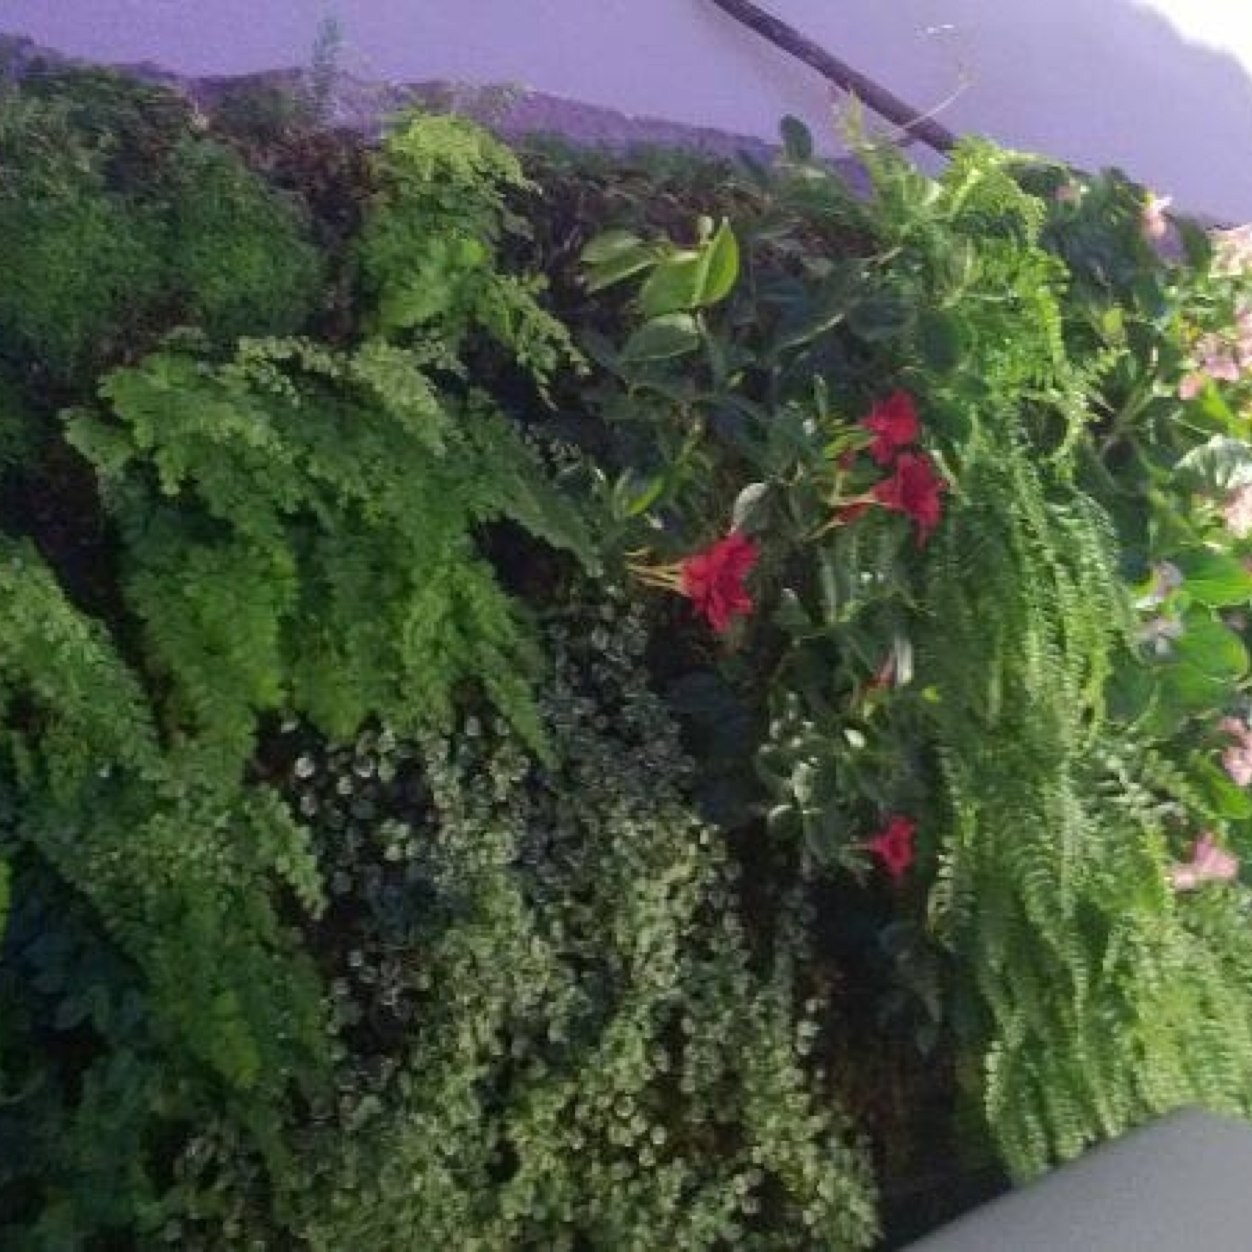 Empresa dedicada a la venta de  musgo sphagnum para la realización de jardinería vertical y cubiertas vegetales.  Arte topiari